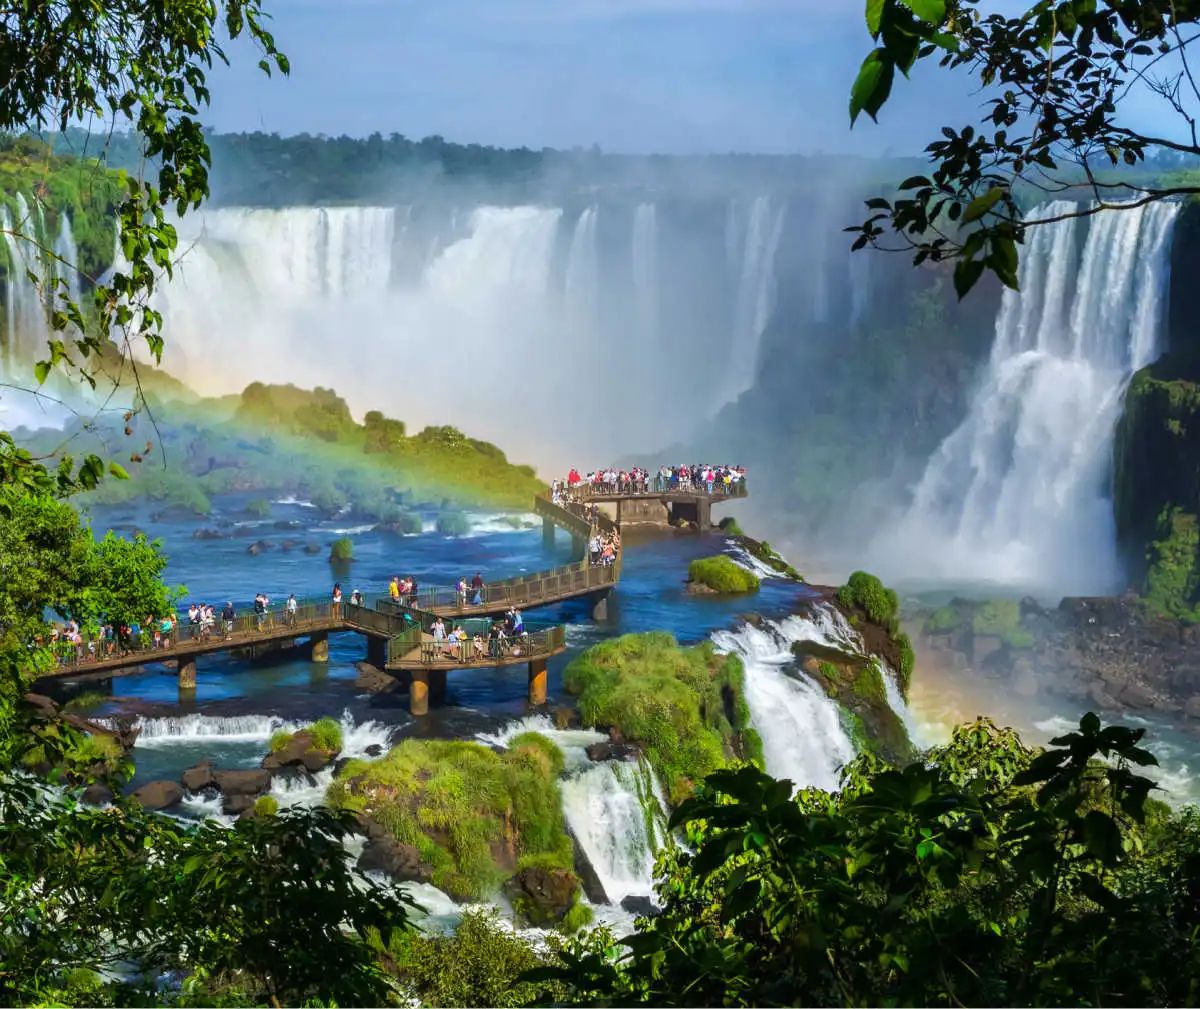 Iguaçu tourism